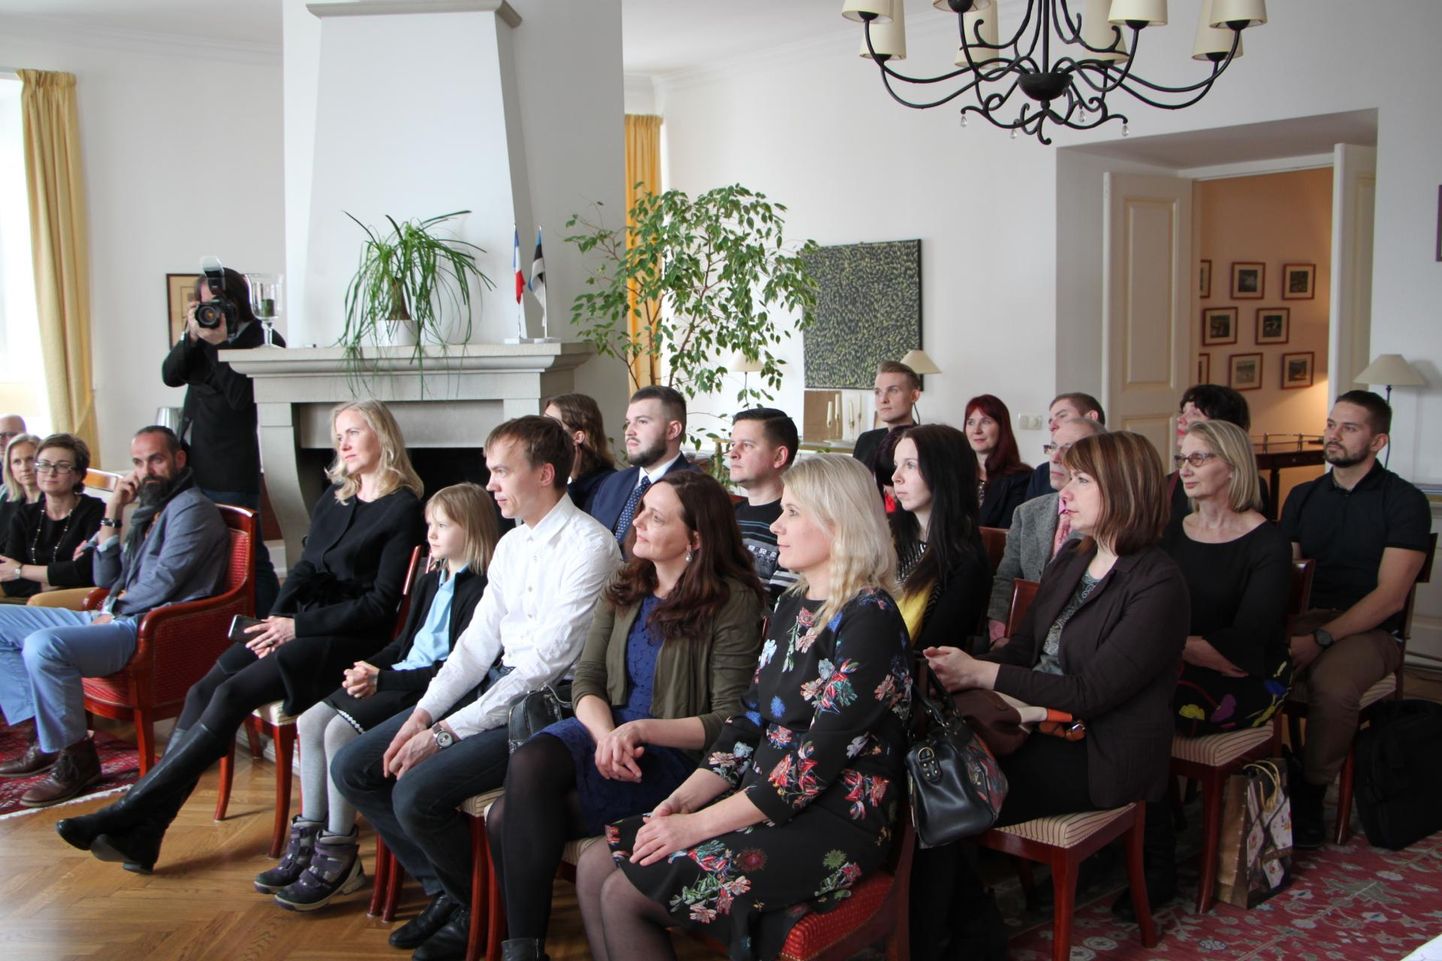 Tänavust gurmeepäeva tutvustati eelmisel nädalal pressikonverentsil.
Prantsuse Suursaatkond Eestis